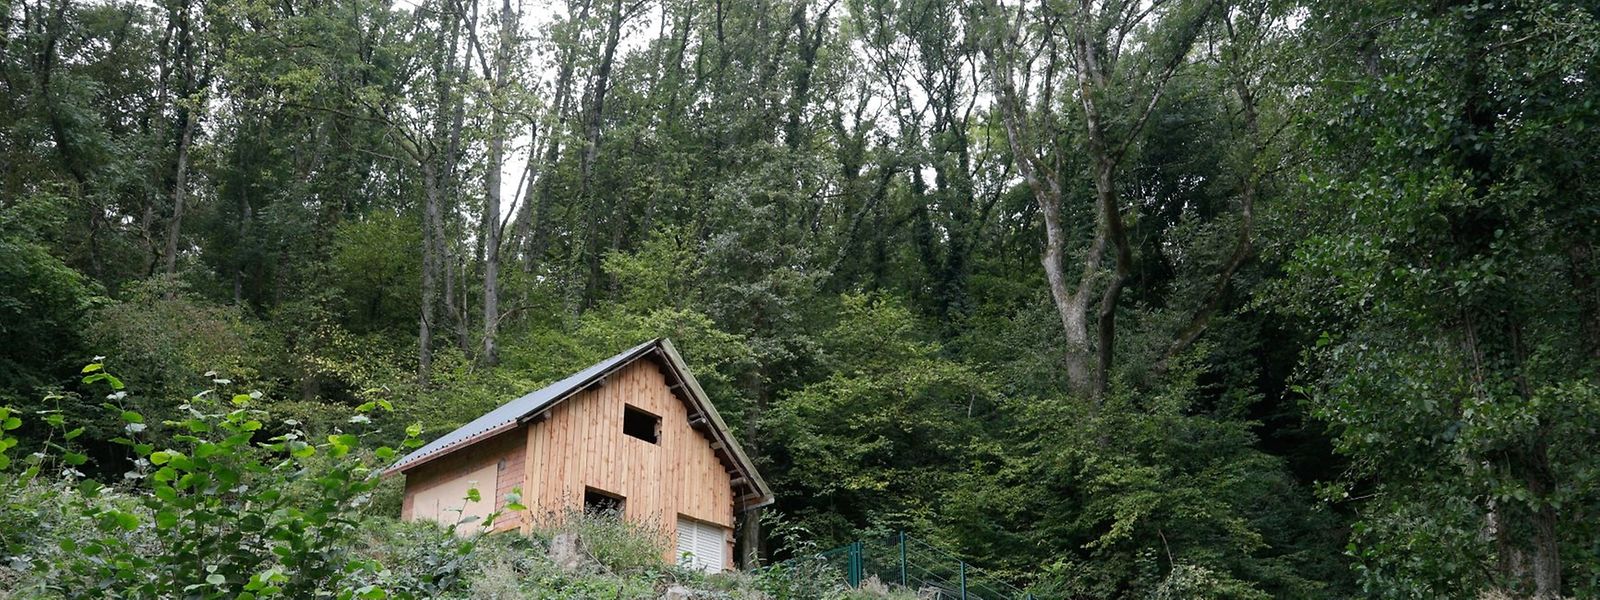 Das wohl bekannteste Gartenhaus Luxemburgs sorgt seit Monaten für viel Aufregung.